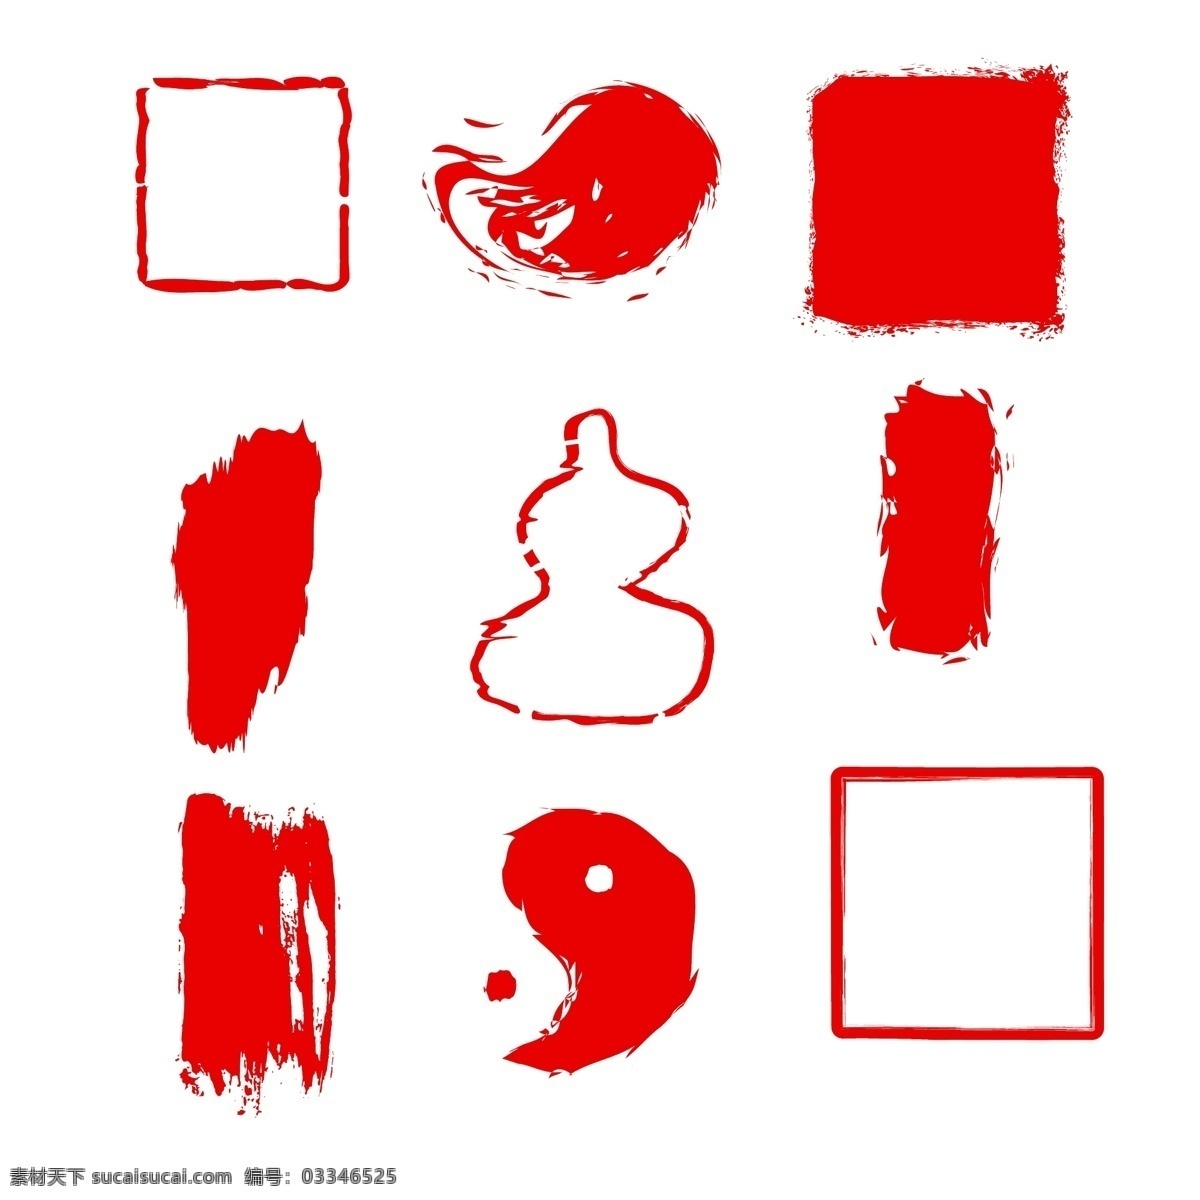 红色印章 章 印章 古典 古风印章 设计元素 招贴设计